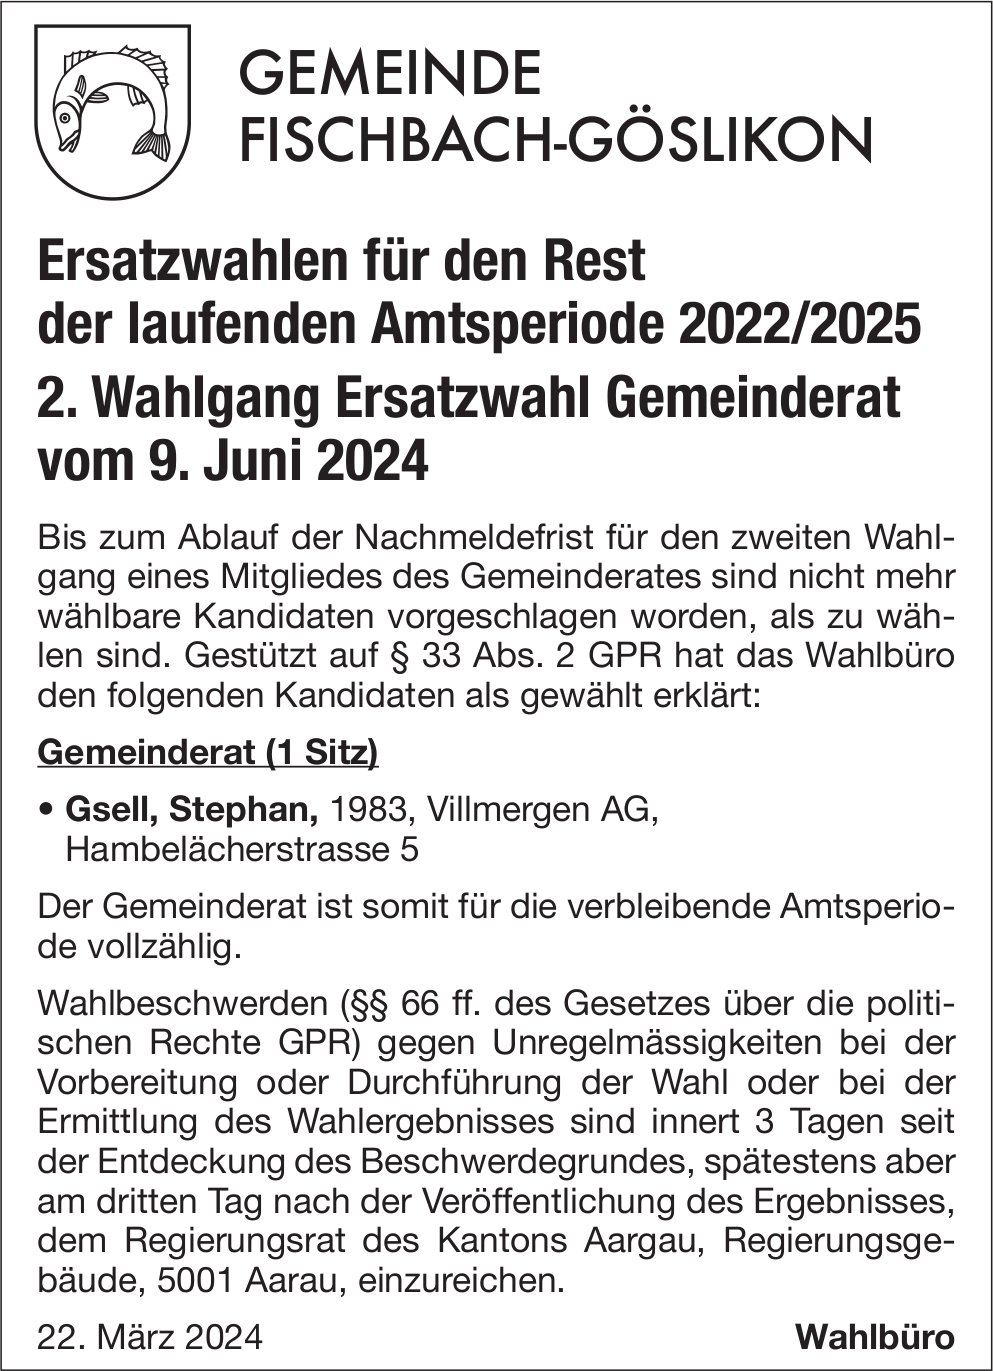 Fischbach-Göslikon - Ersatzwahlen für den Rest der laufenden Amtsperiode